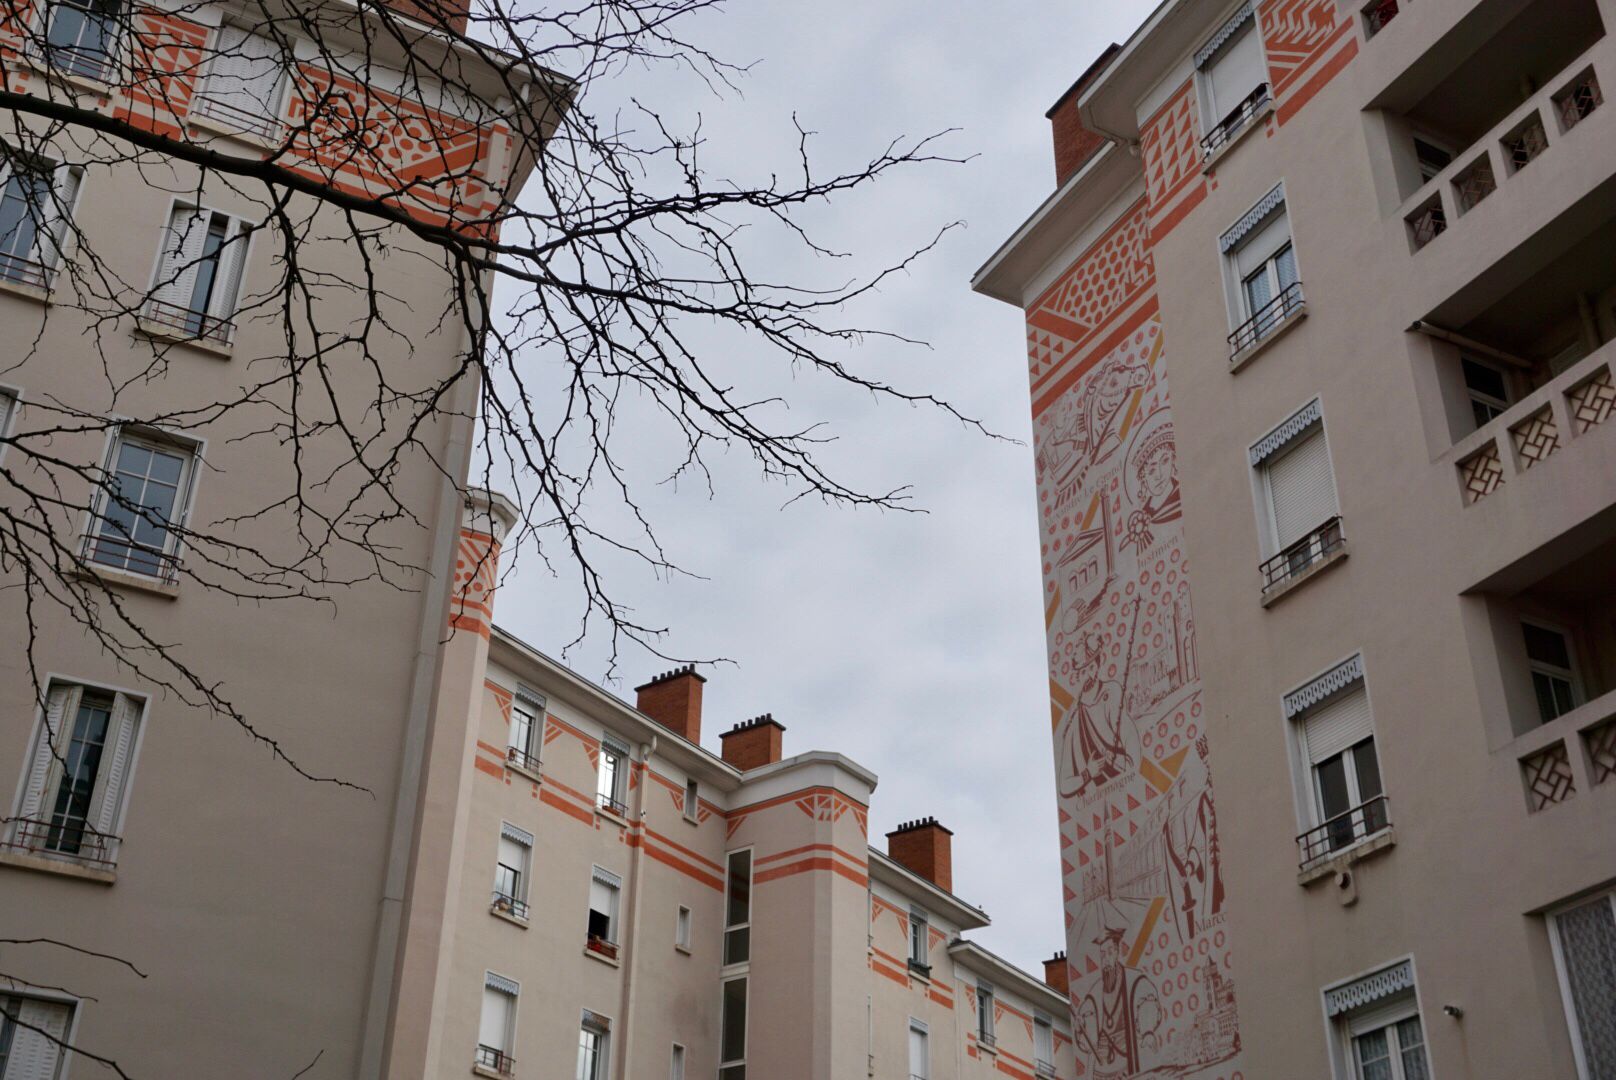 Mehrstöckige, hell verputzte Wohnhäuser mit orangeroten Verzierungen und einem großen, detailreichen Wandgemälde an der Fassade, sind umrahmt von einem kahlen Baum